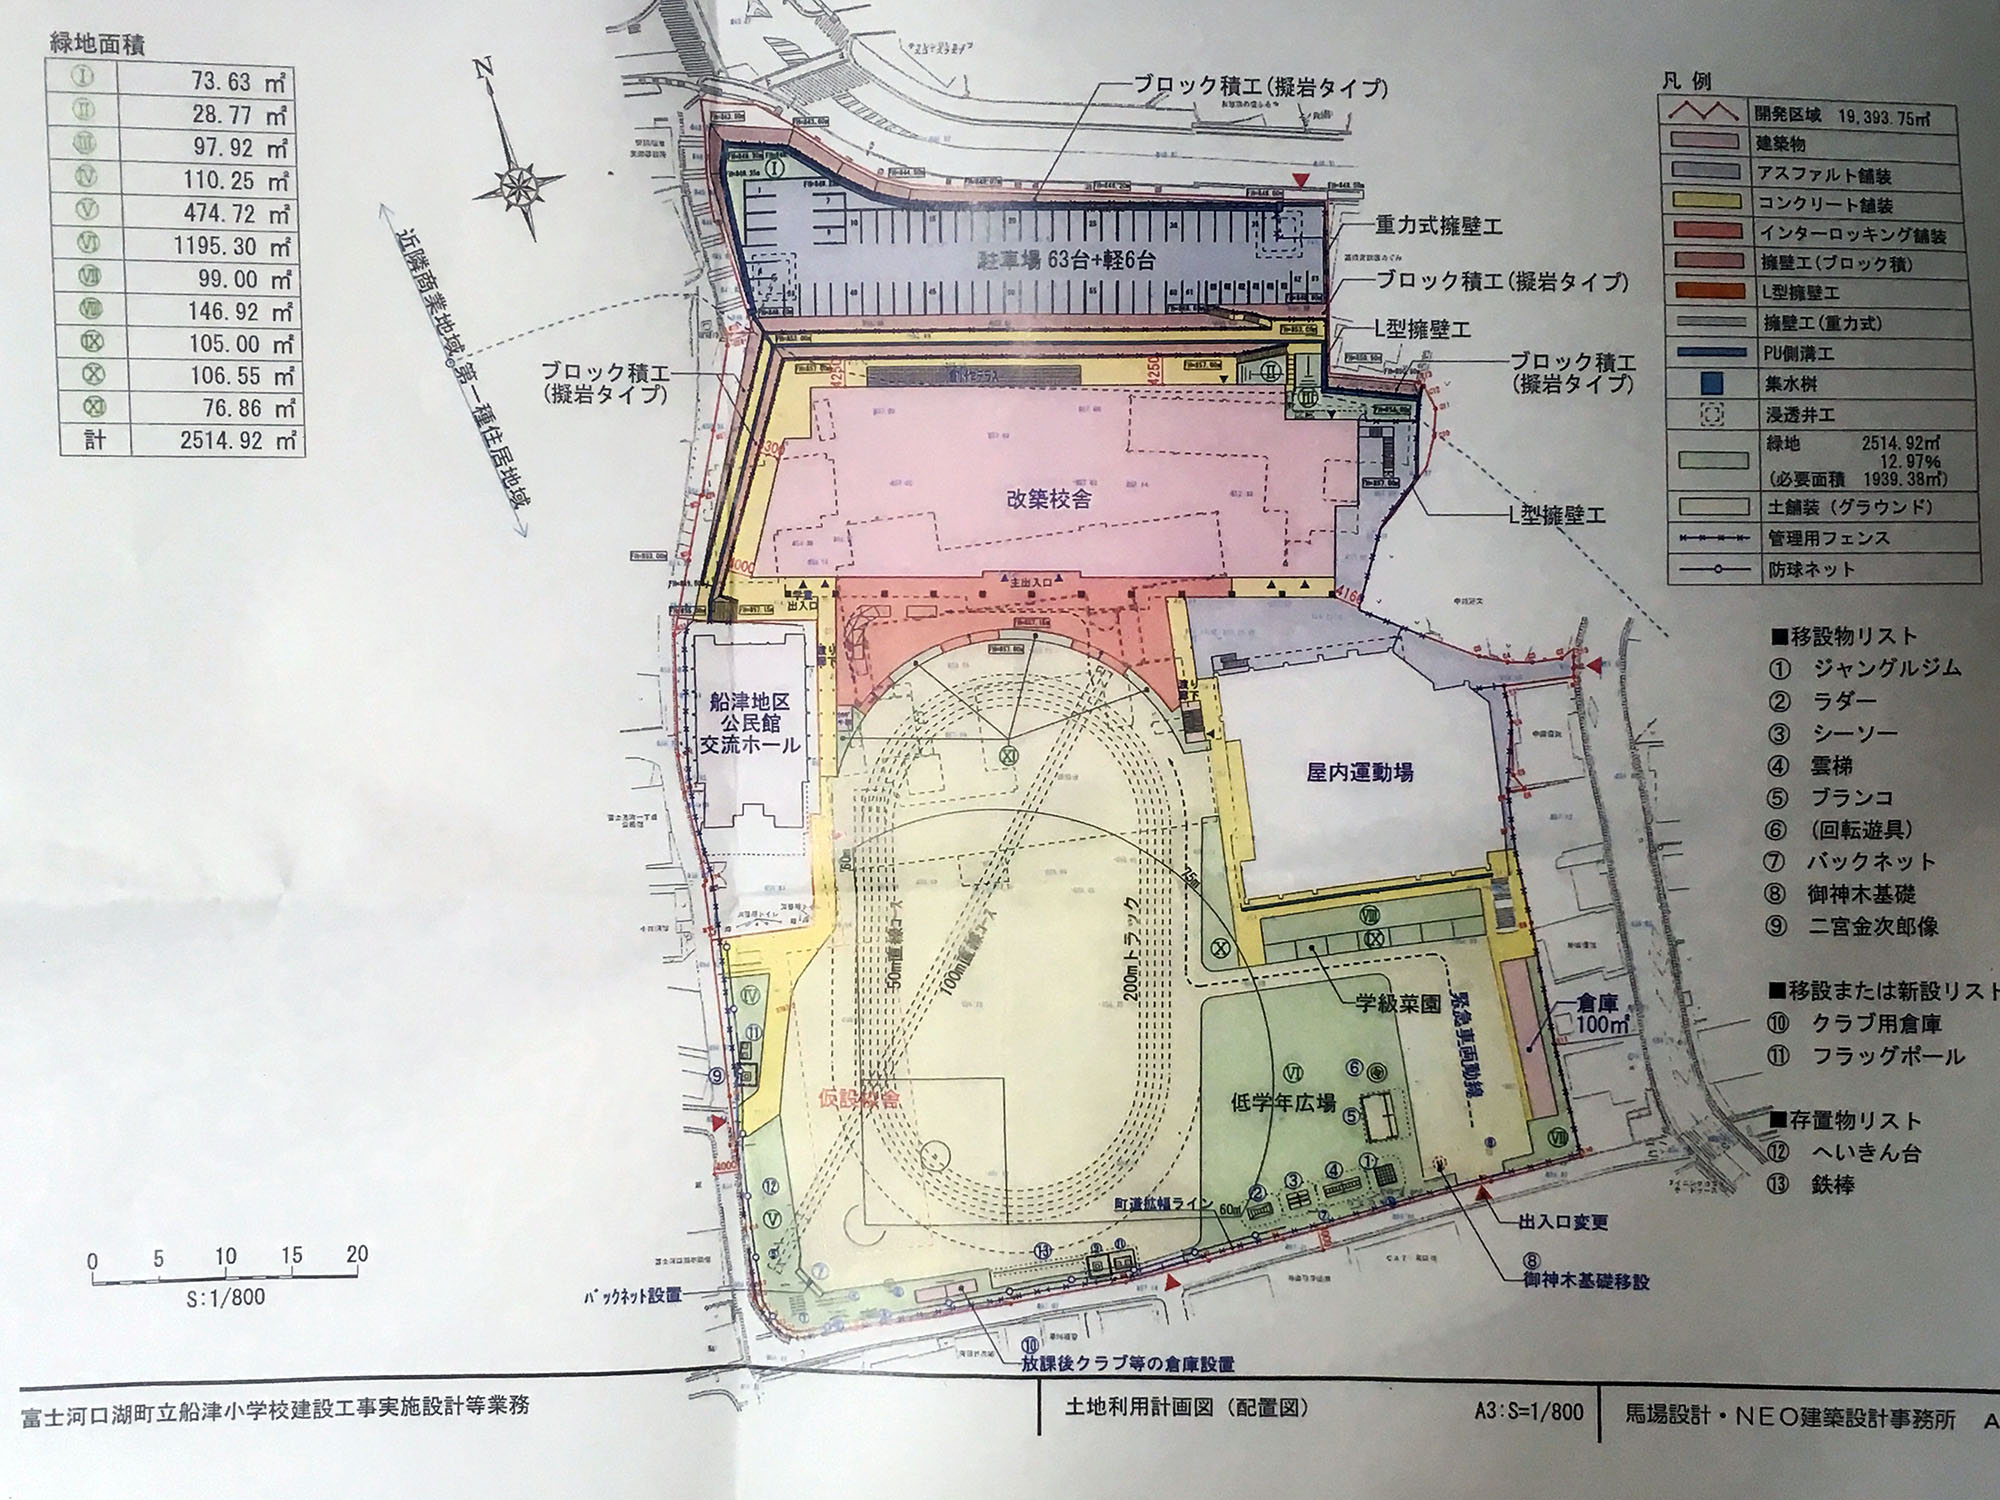 船津小学校新校舎建設建て替え後の配置図